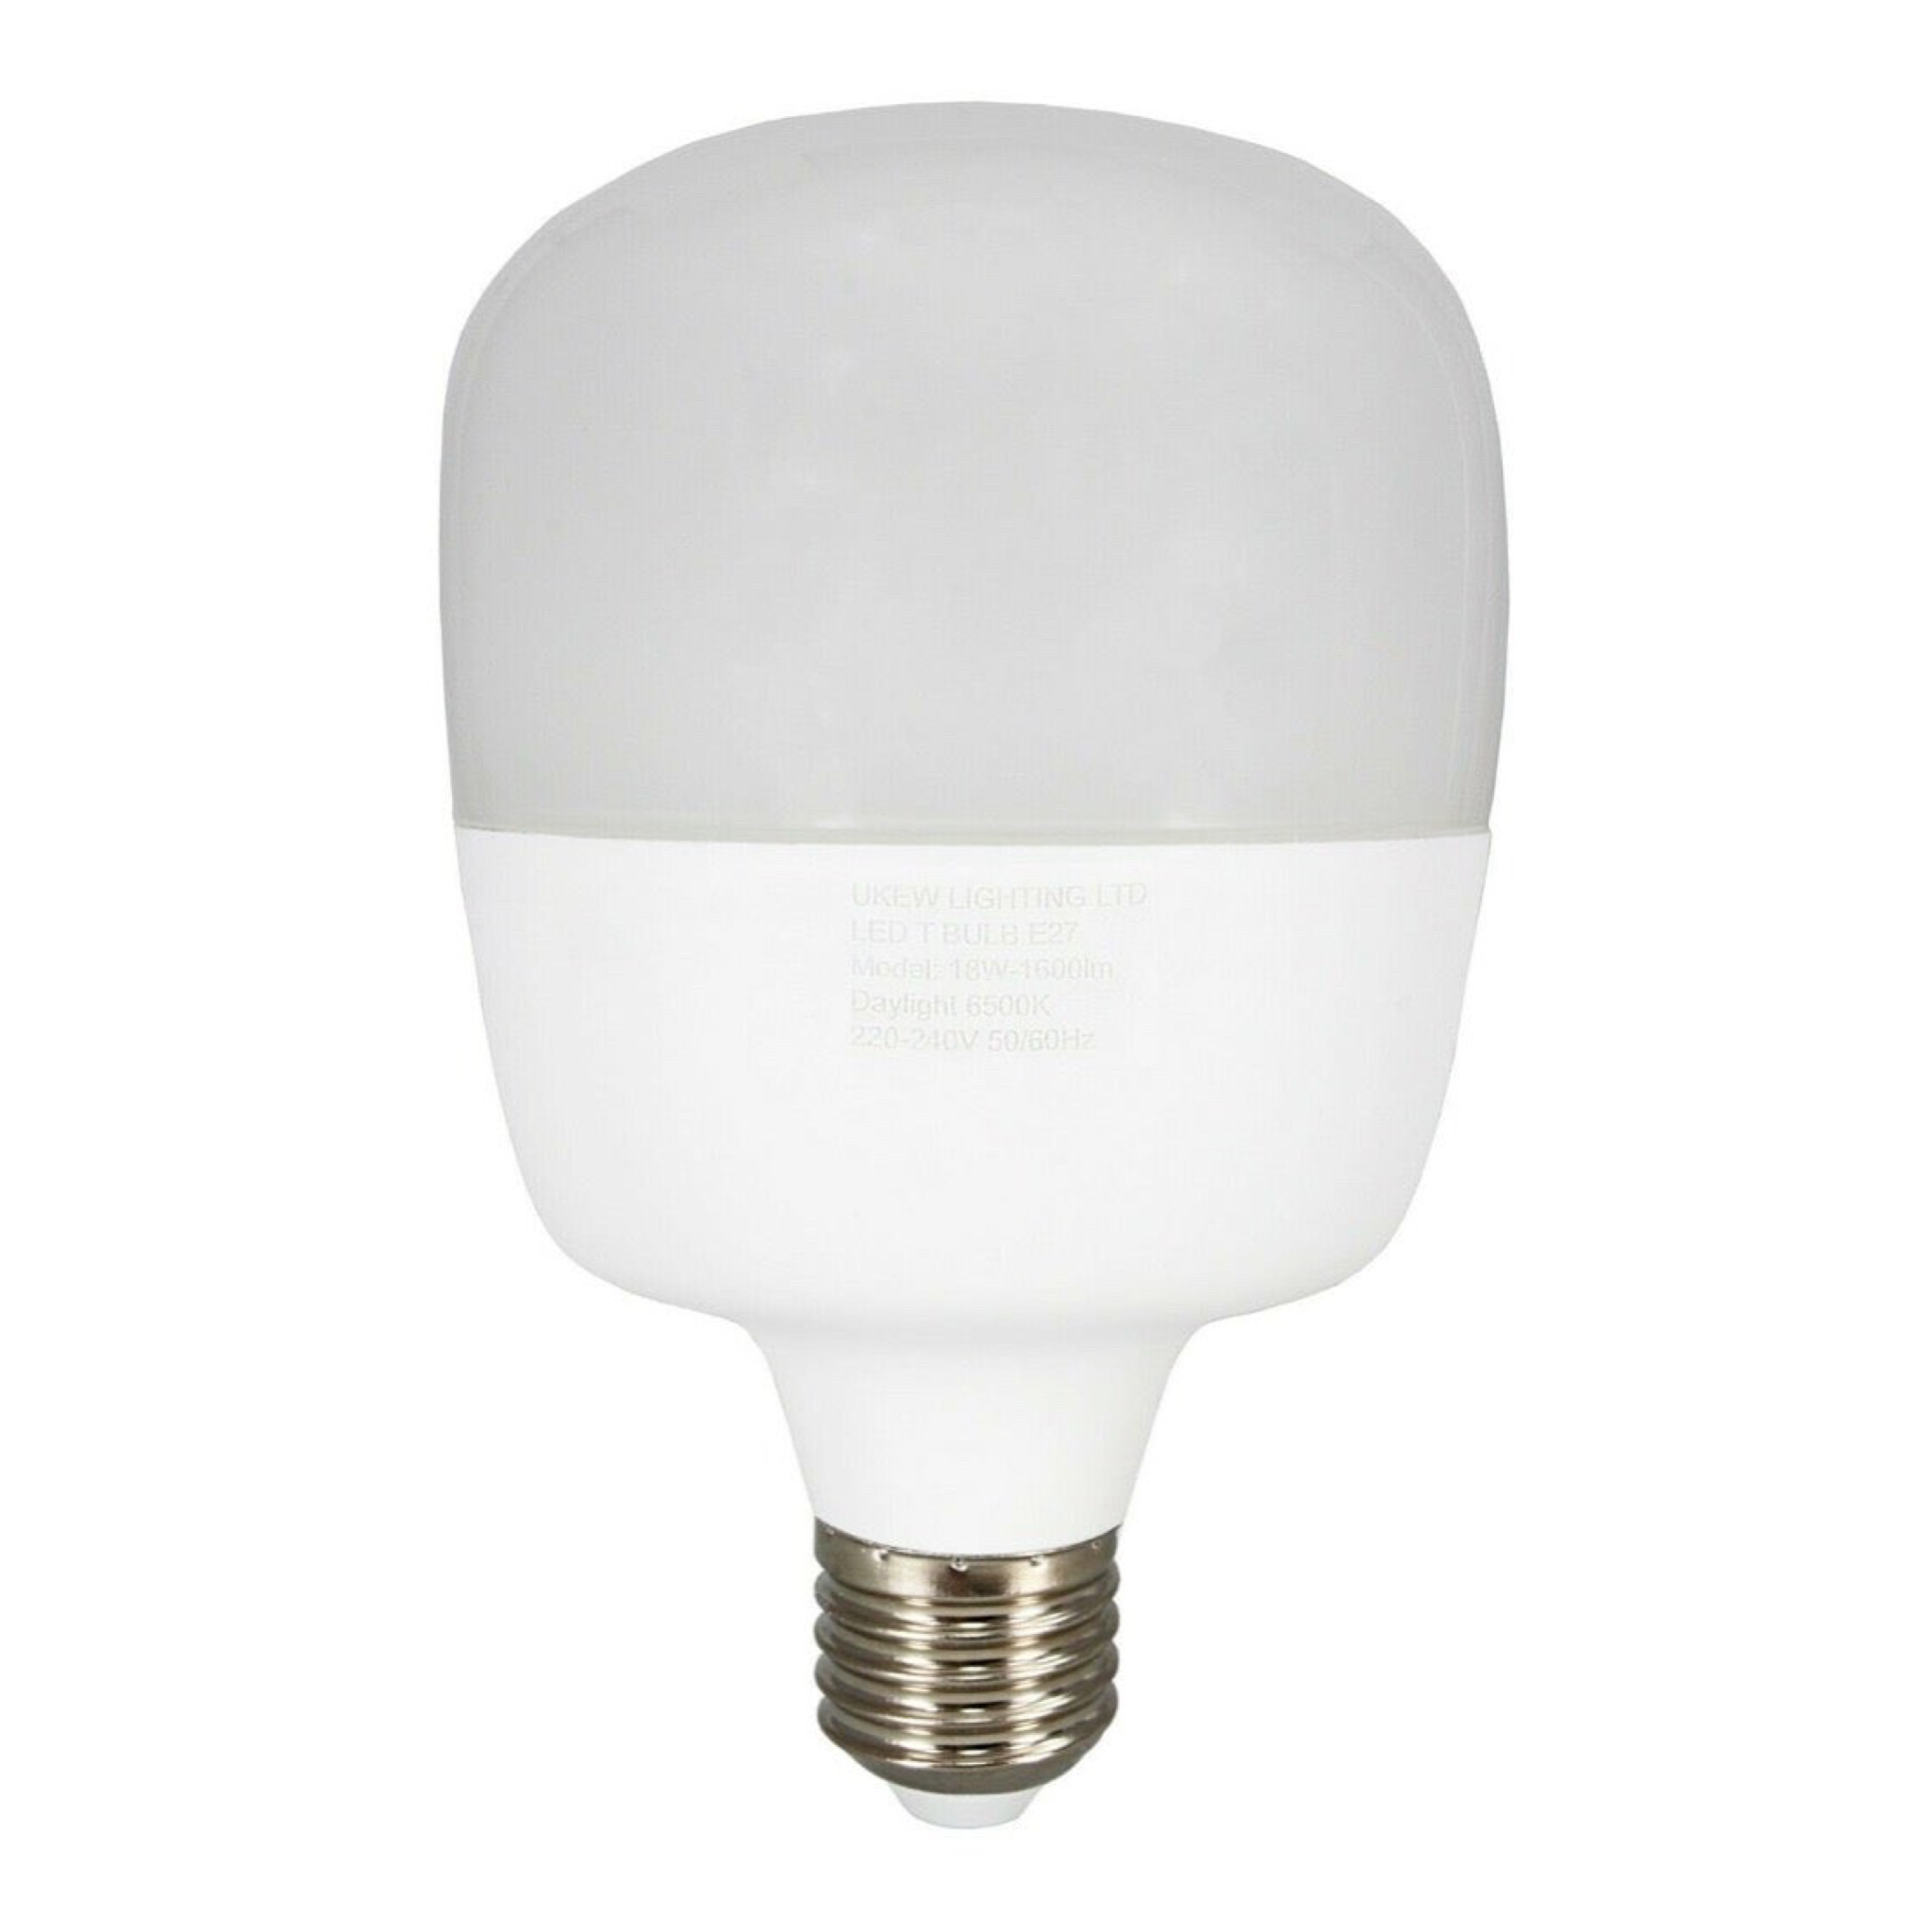 2 x Large ECO LED Light T-Bulb Lamp 18W E27 screw 1600Lumens  6500k eco+